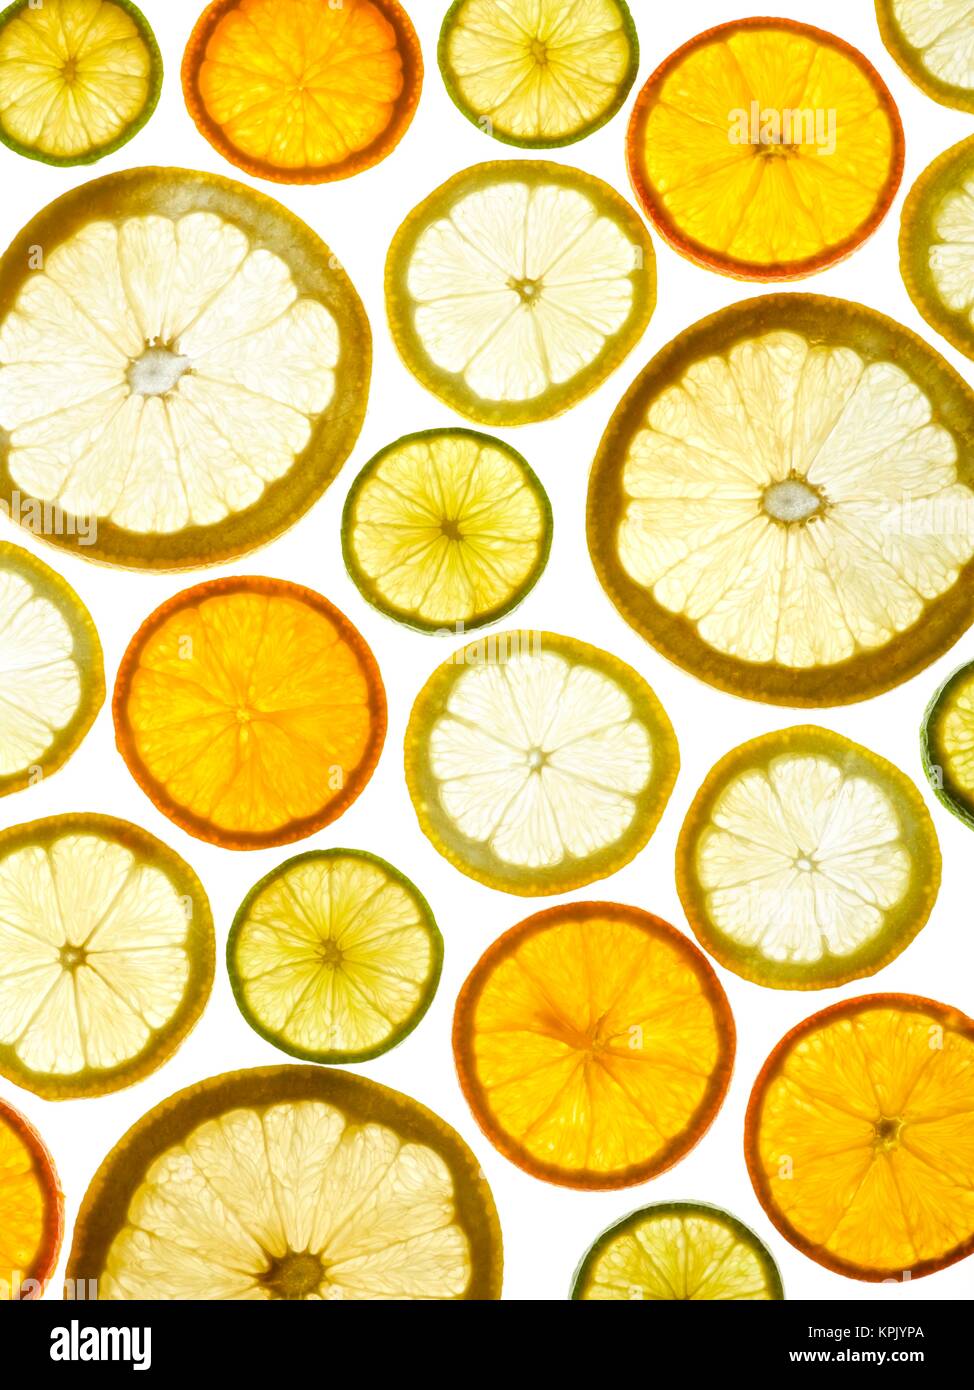 Zitrusfrucht-Hälften auf einem weißen Hintergrund. Stockfoto